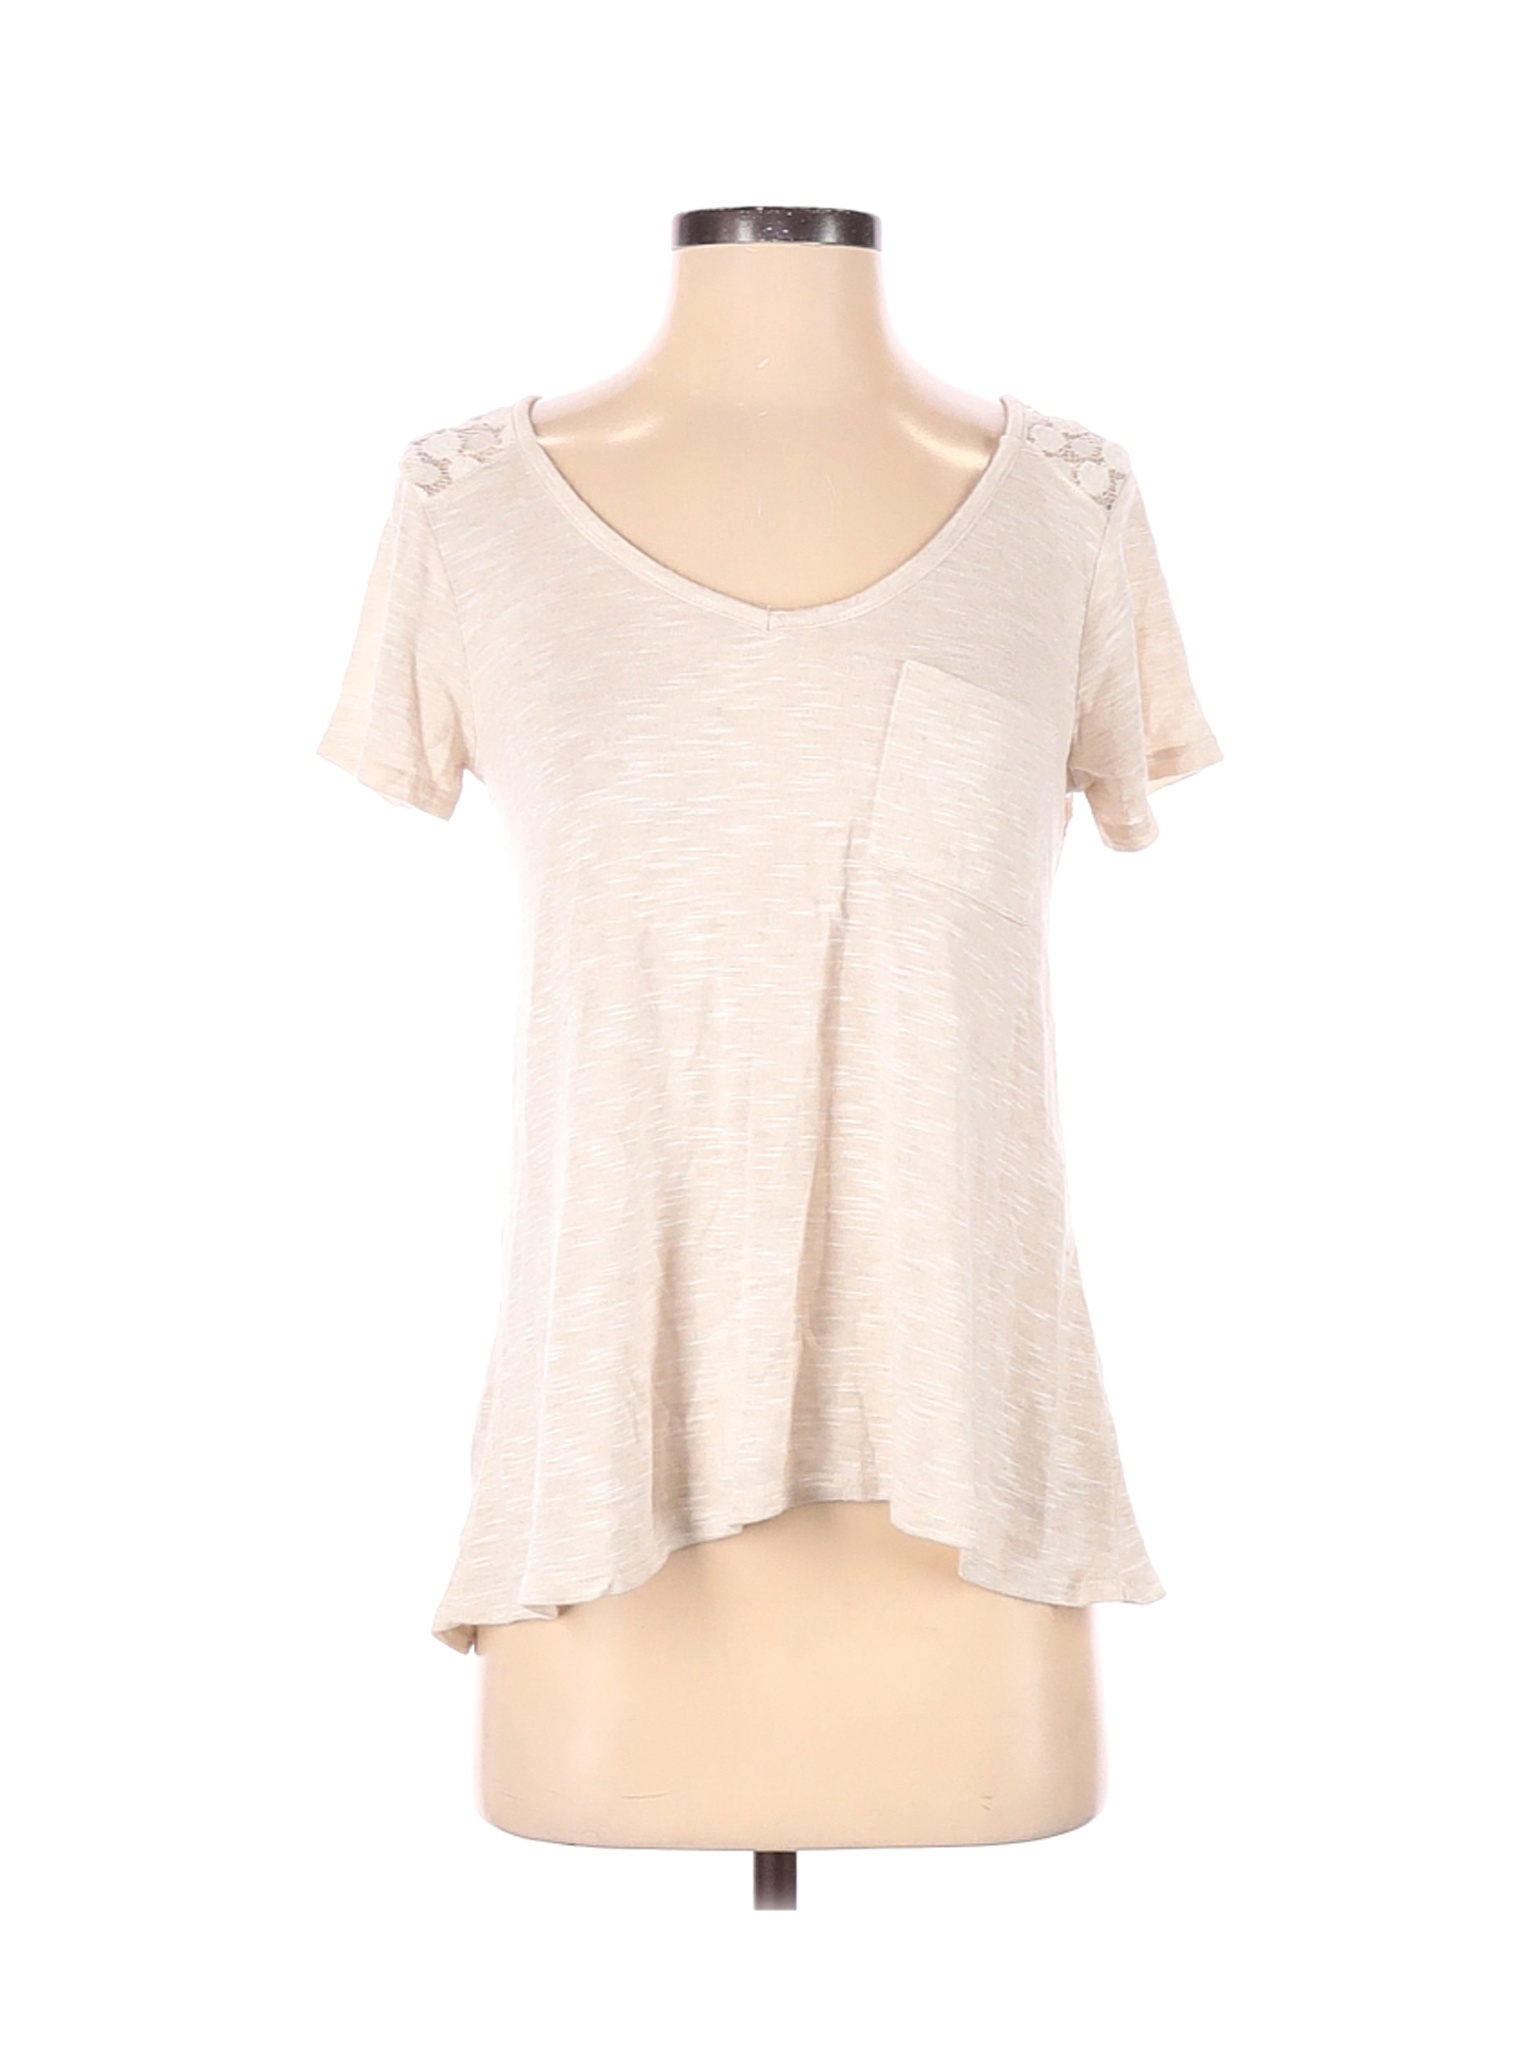 Neon Soul Women Ivory Short Sleeve Top S | eBay